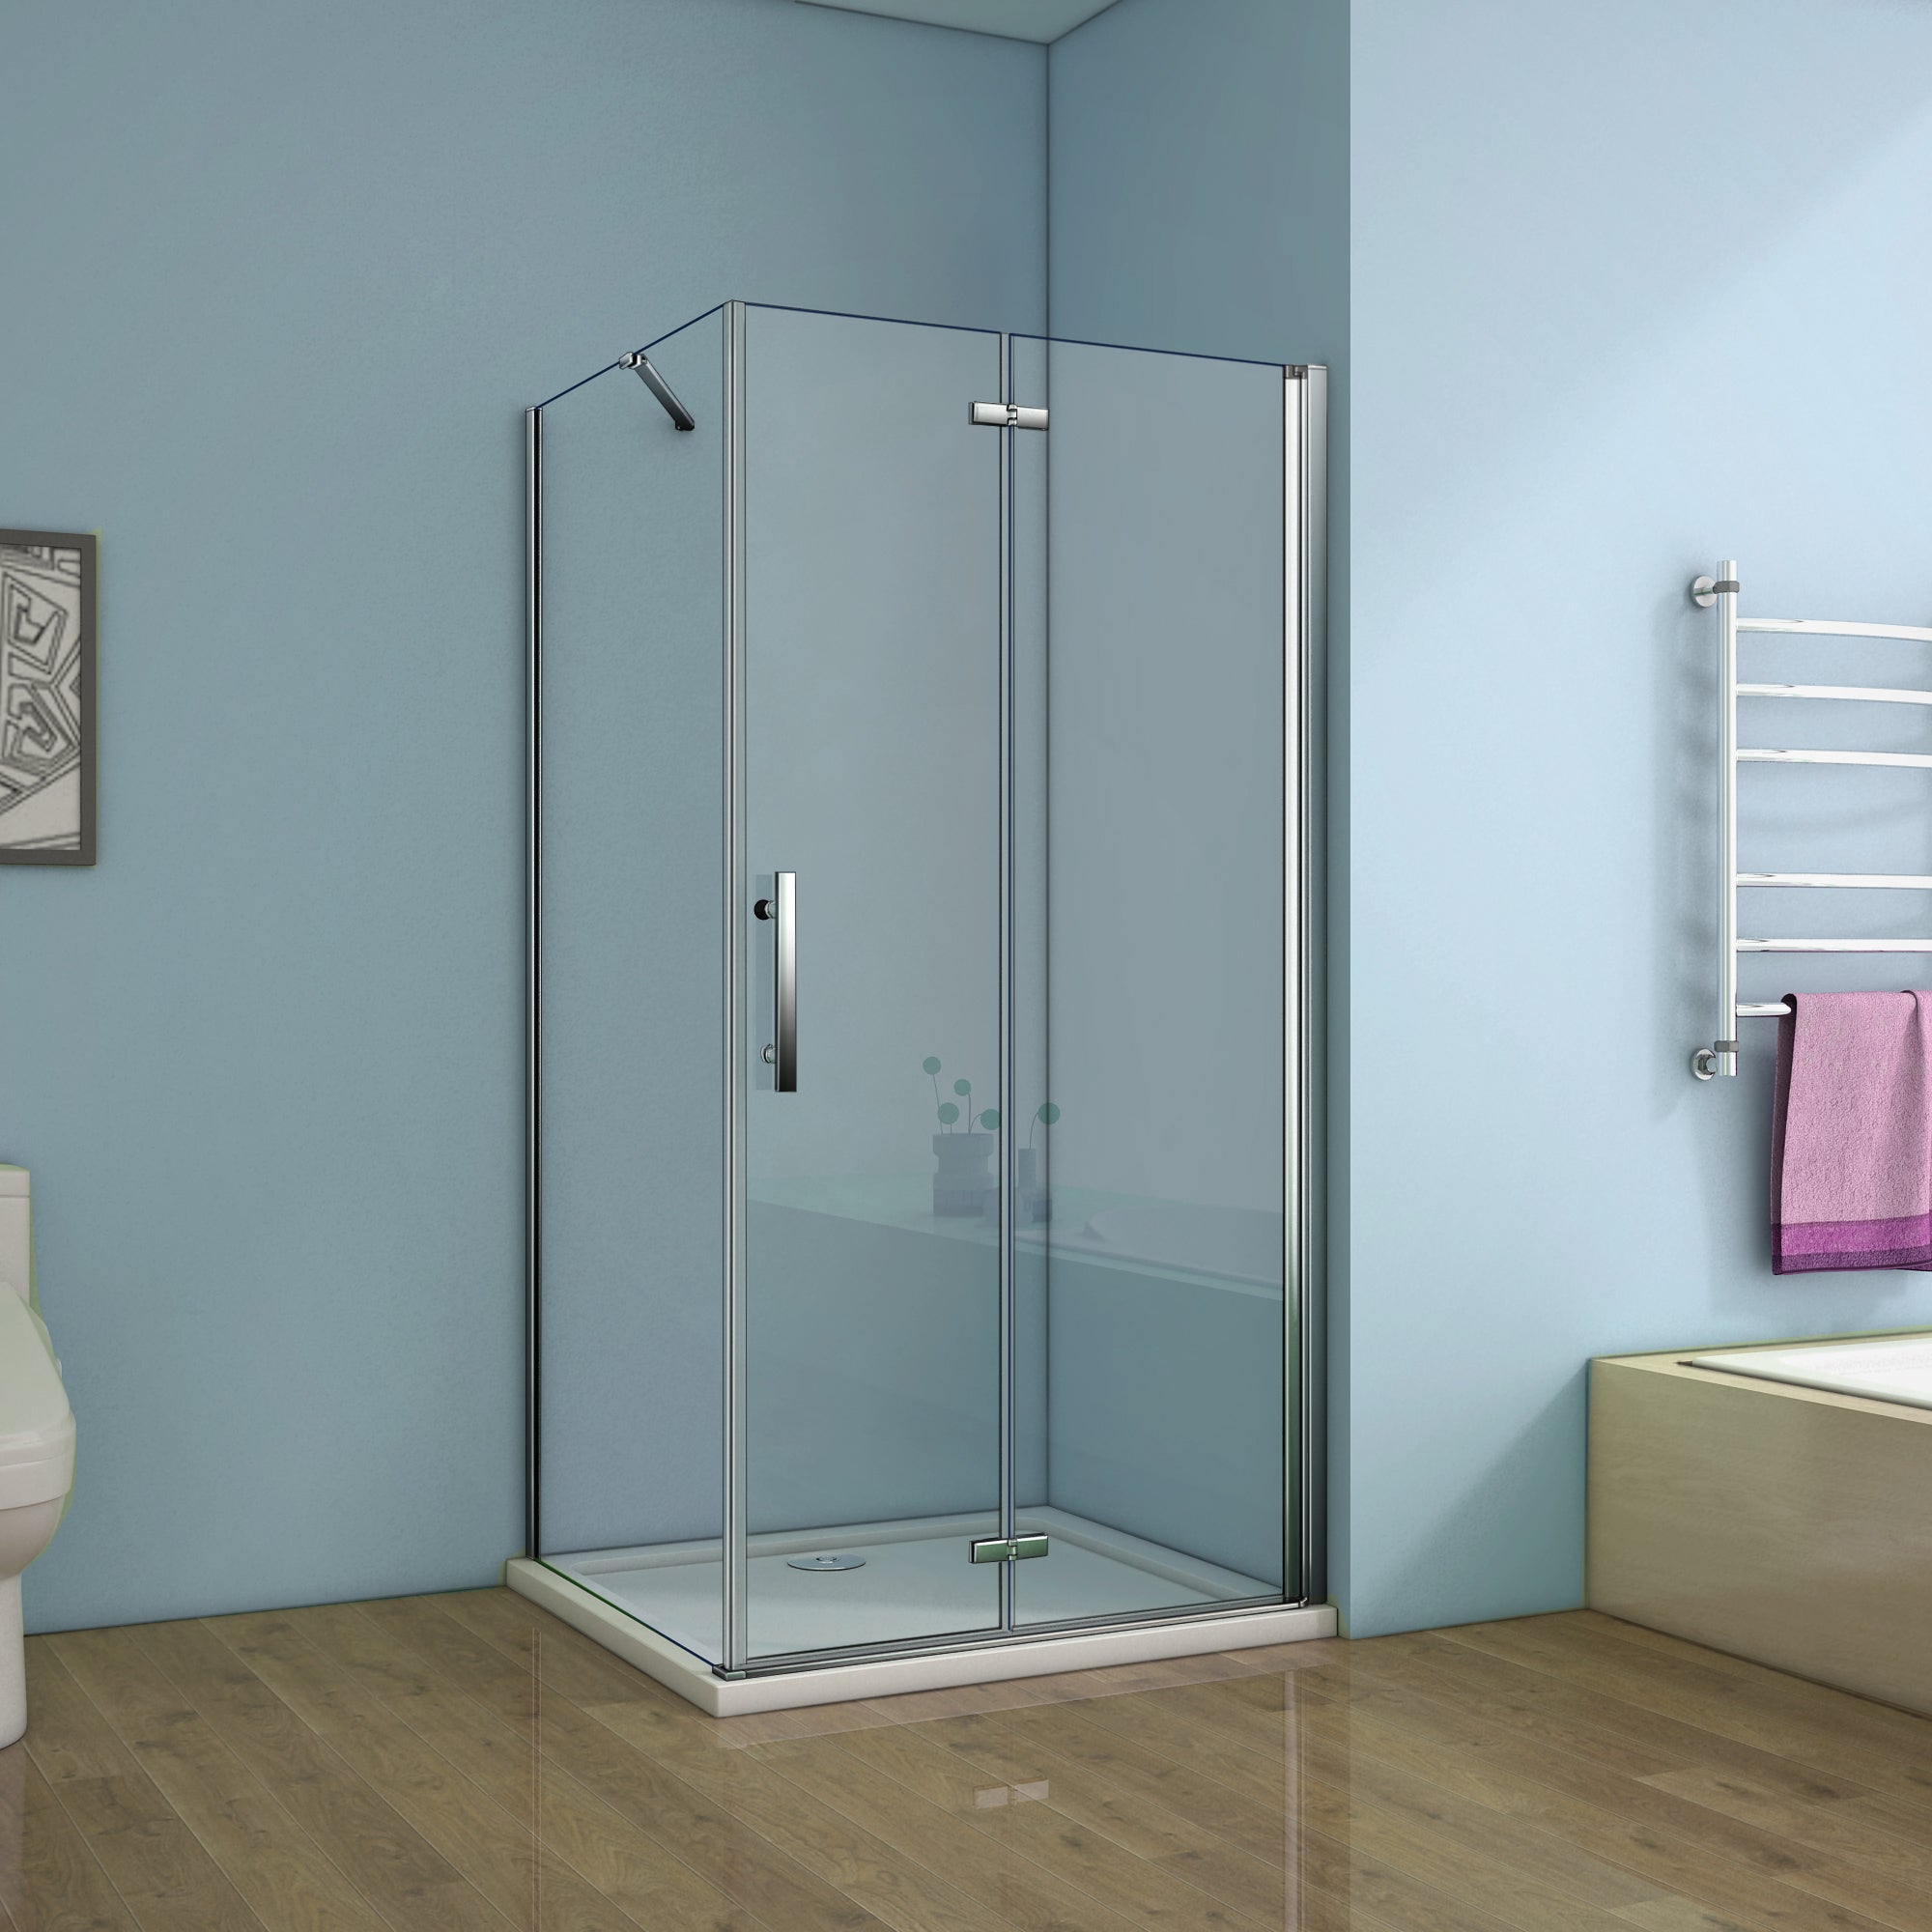 Aica cabine de douche pivotante-pliante,porte de douche avec paroi de douche avec barre de fixation 45cm,différentes dimensions disponibles -Livraison gratuite